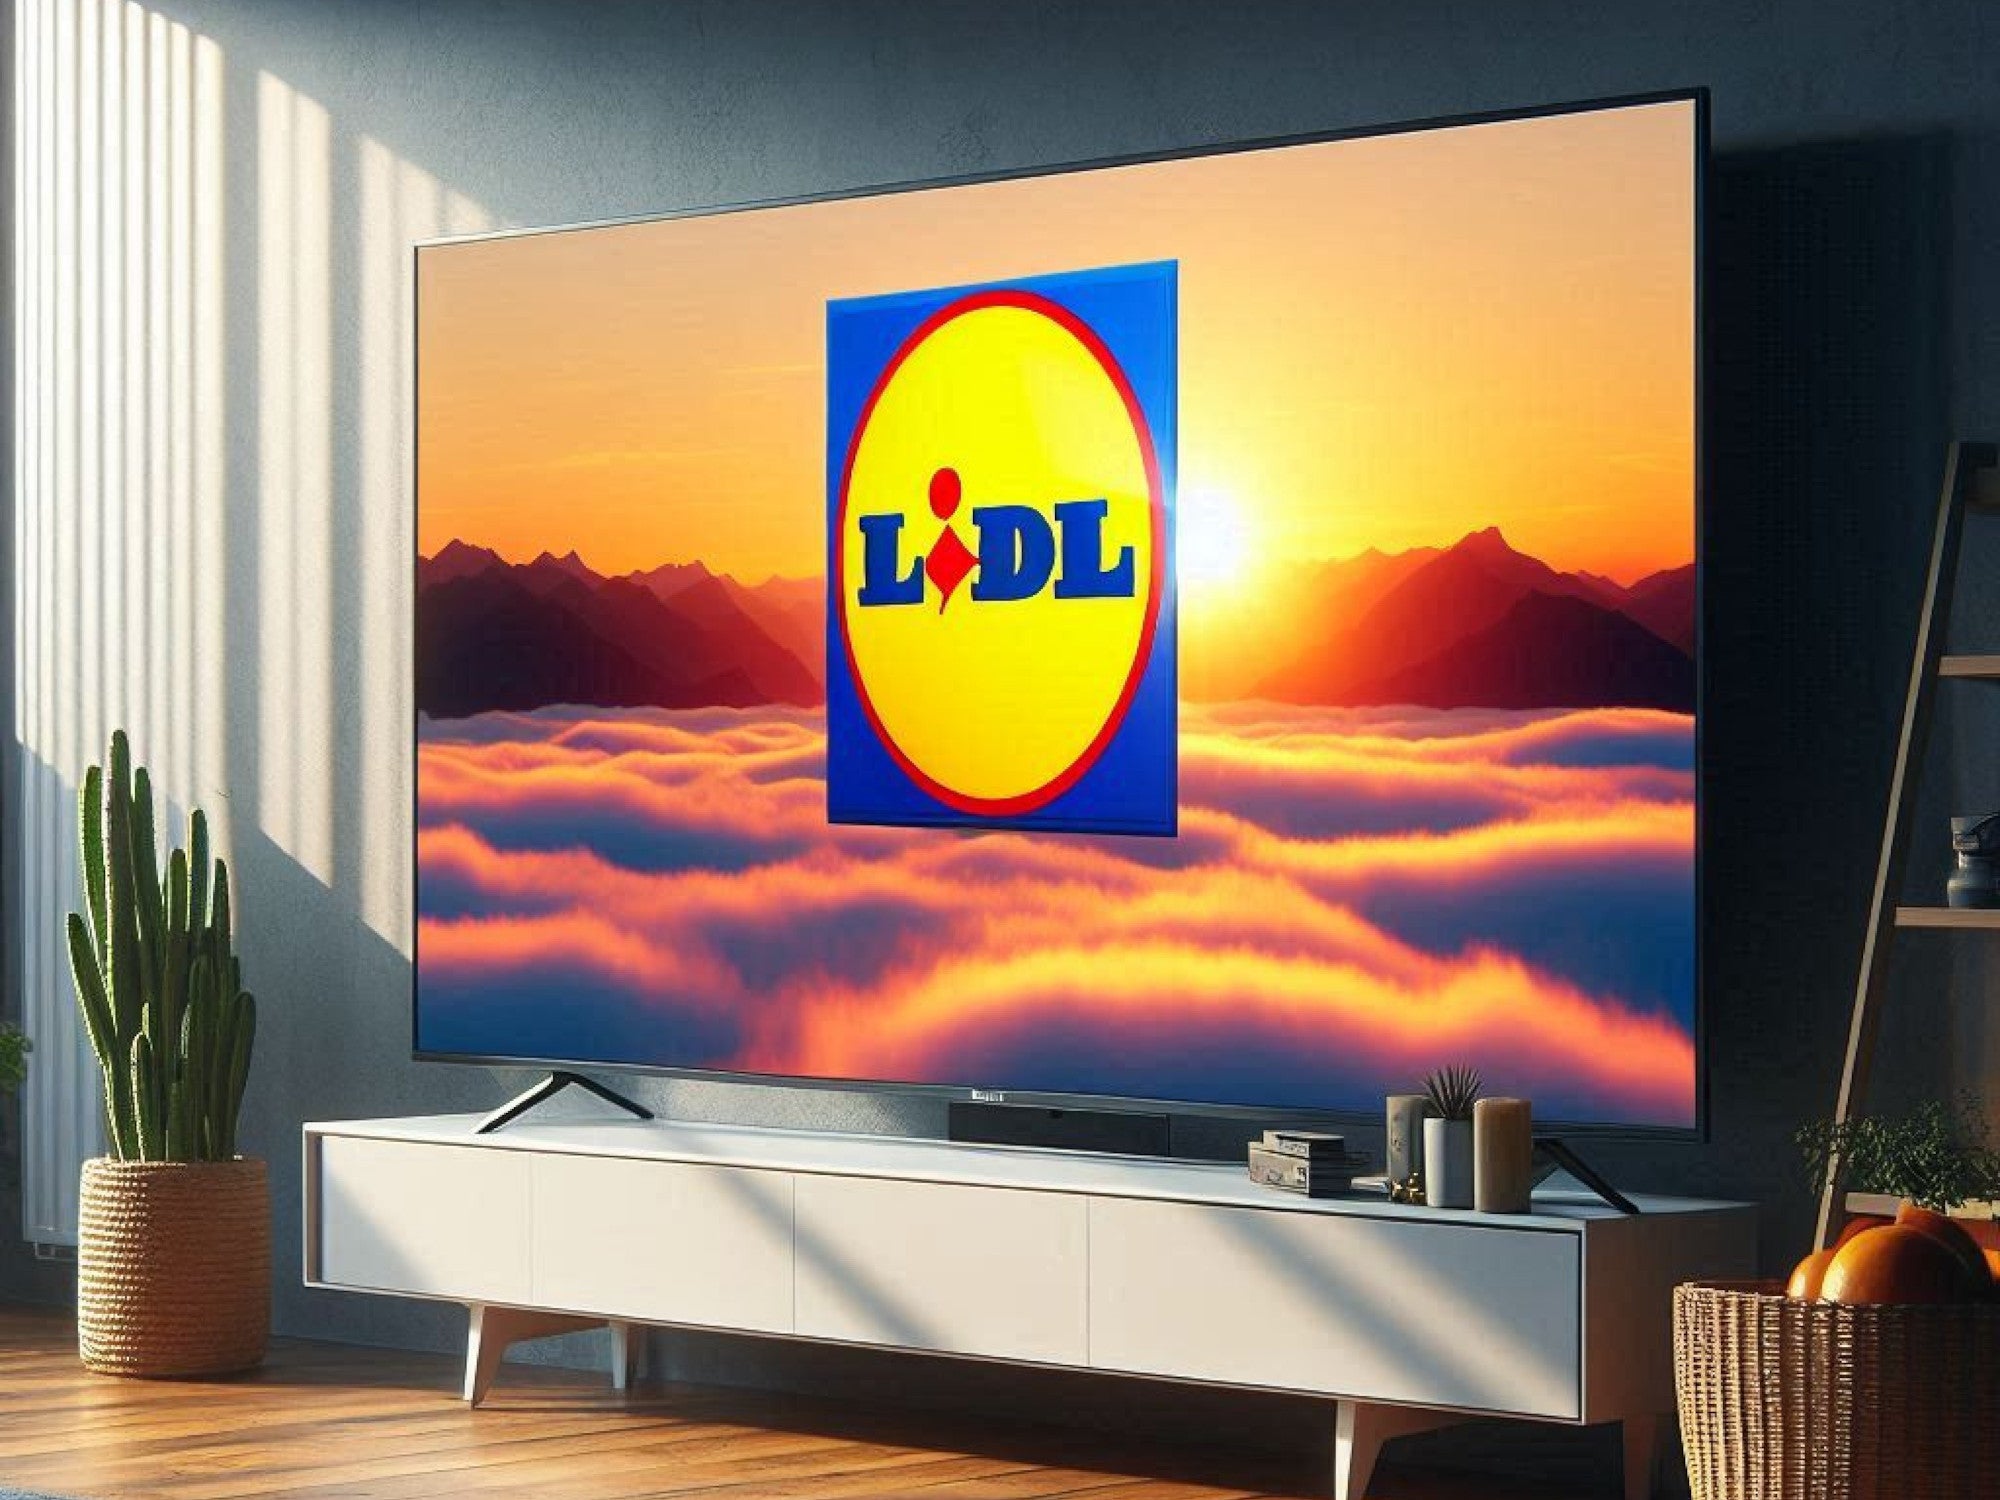 Fernseher in einem Wohnzimmer mit dem Logo von LIdl auf dem Display.